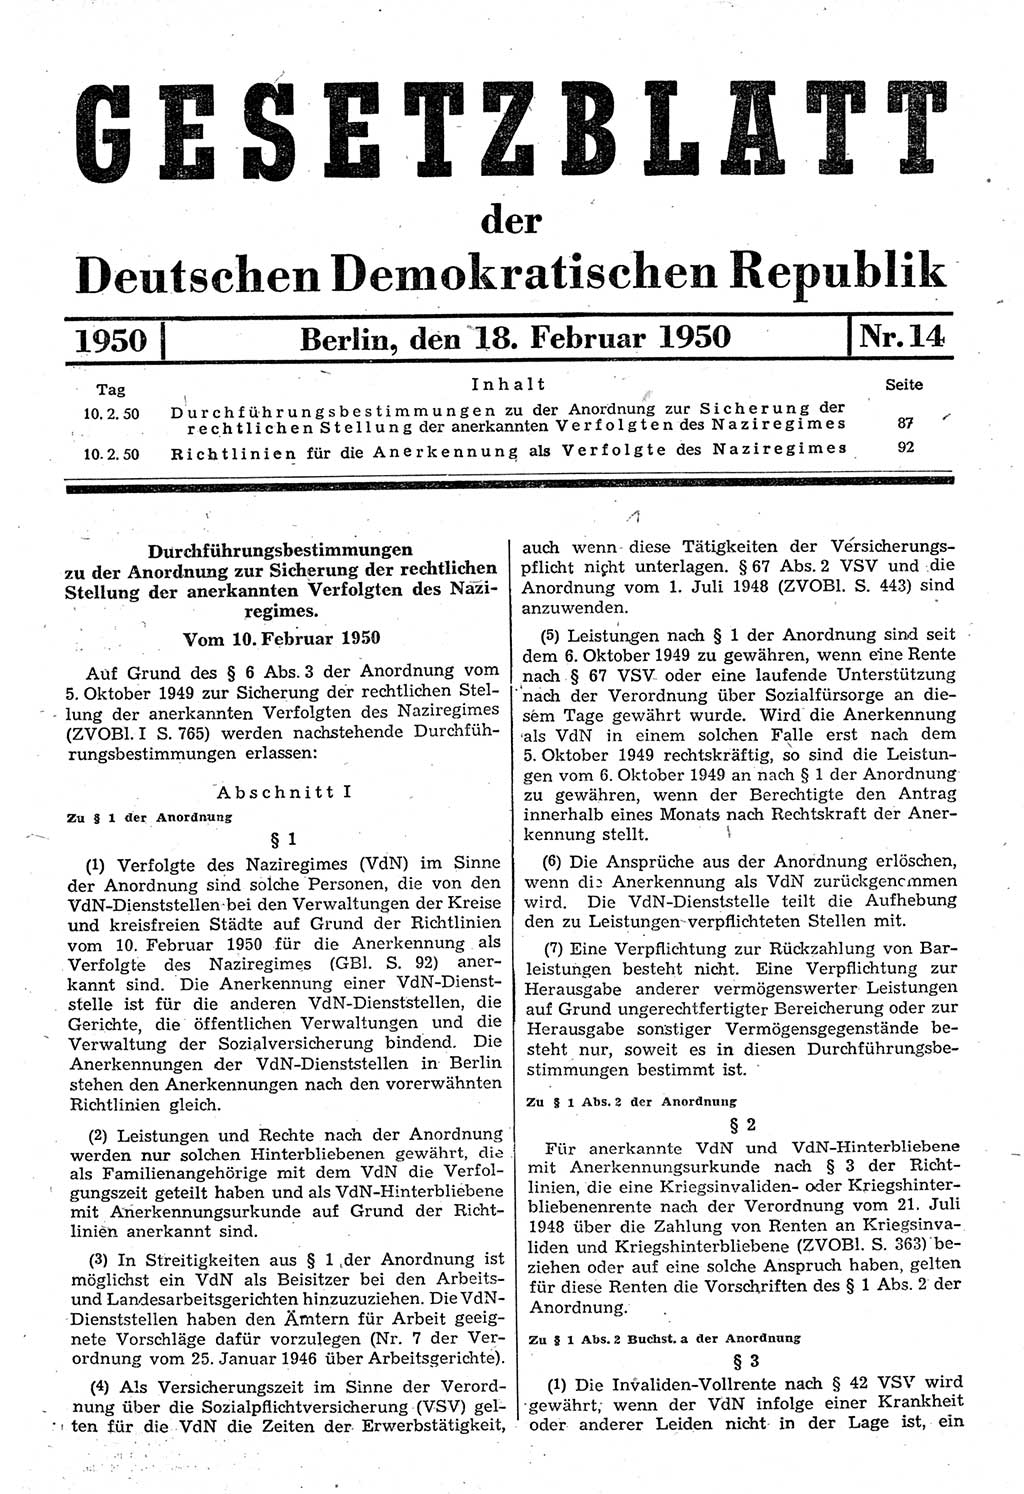 Gesetzblatt (GBl.) der Deutschen Demokratischen Republik (DDR) 1950, Seite 87 (GBl. DDR 1950, S. 87)